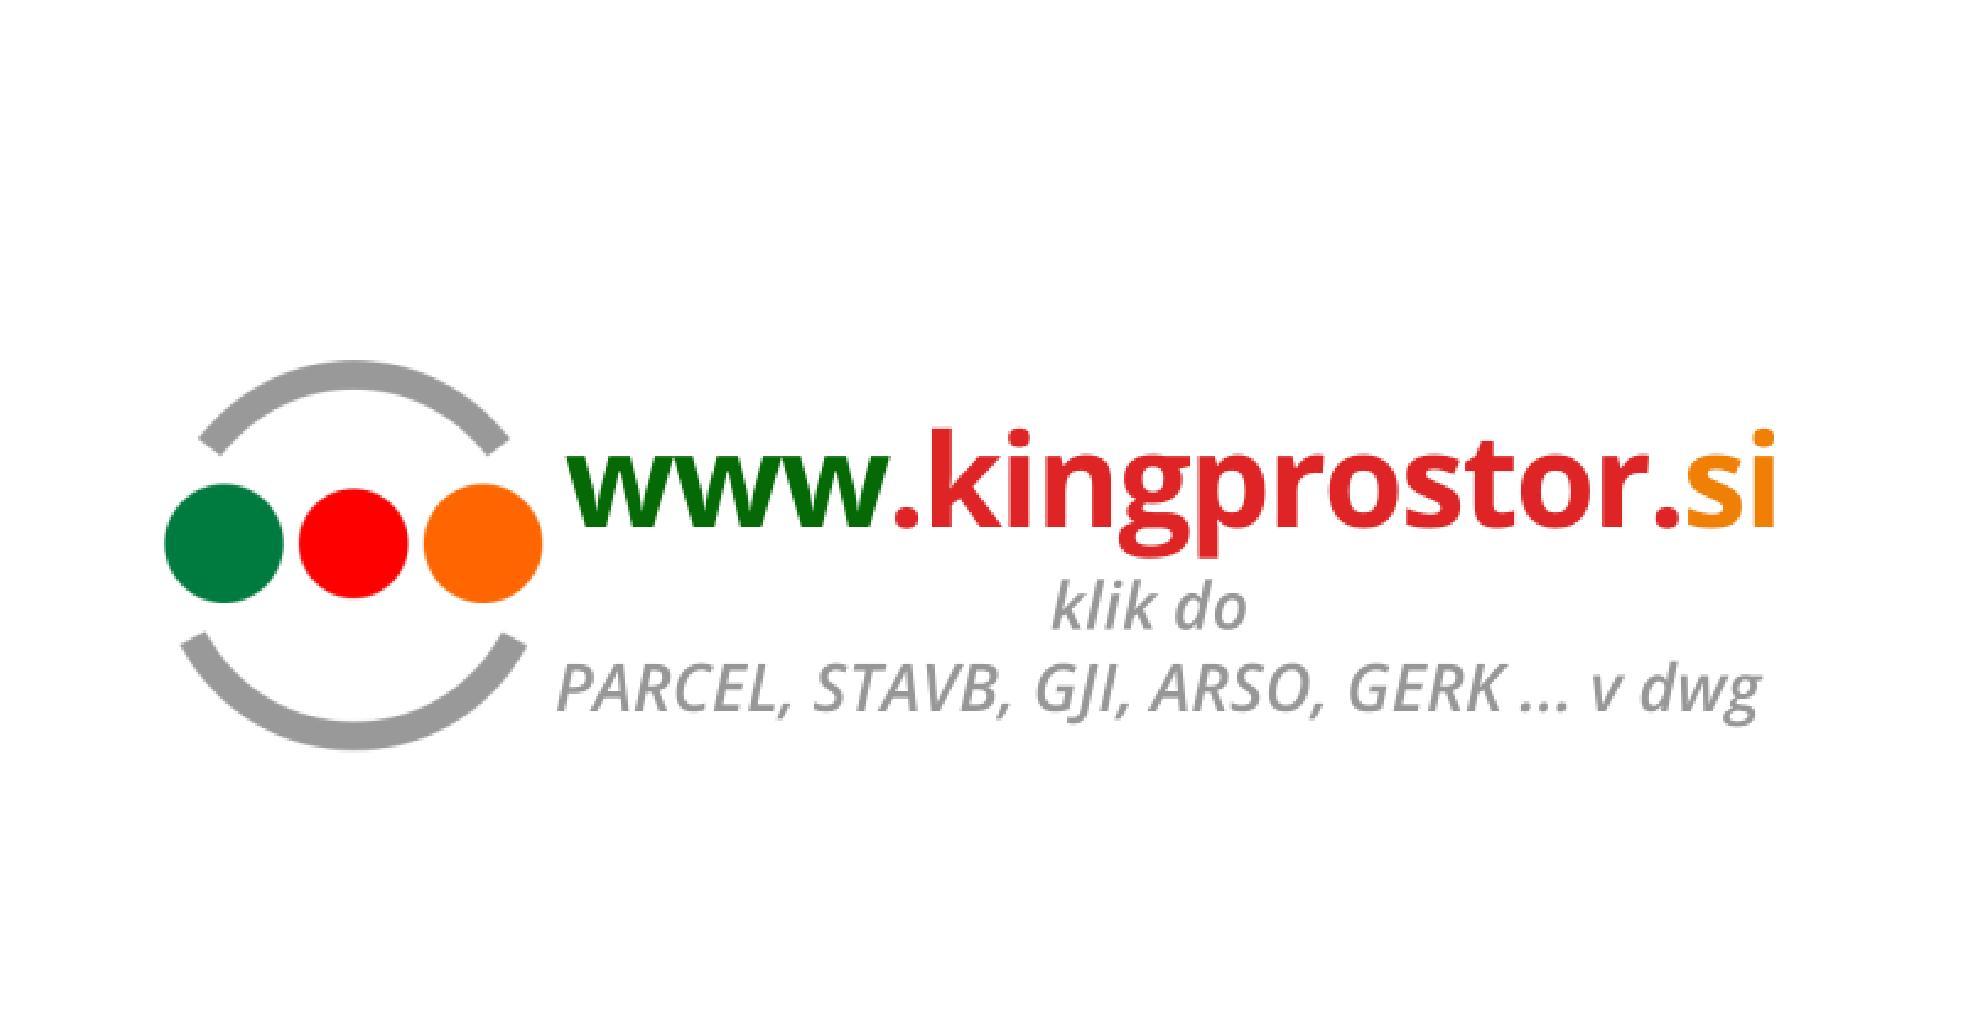 Podjetje Kingprostor